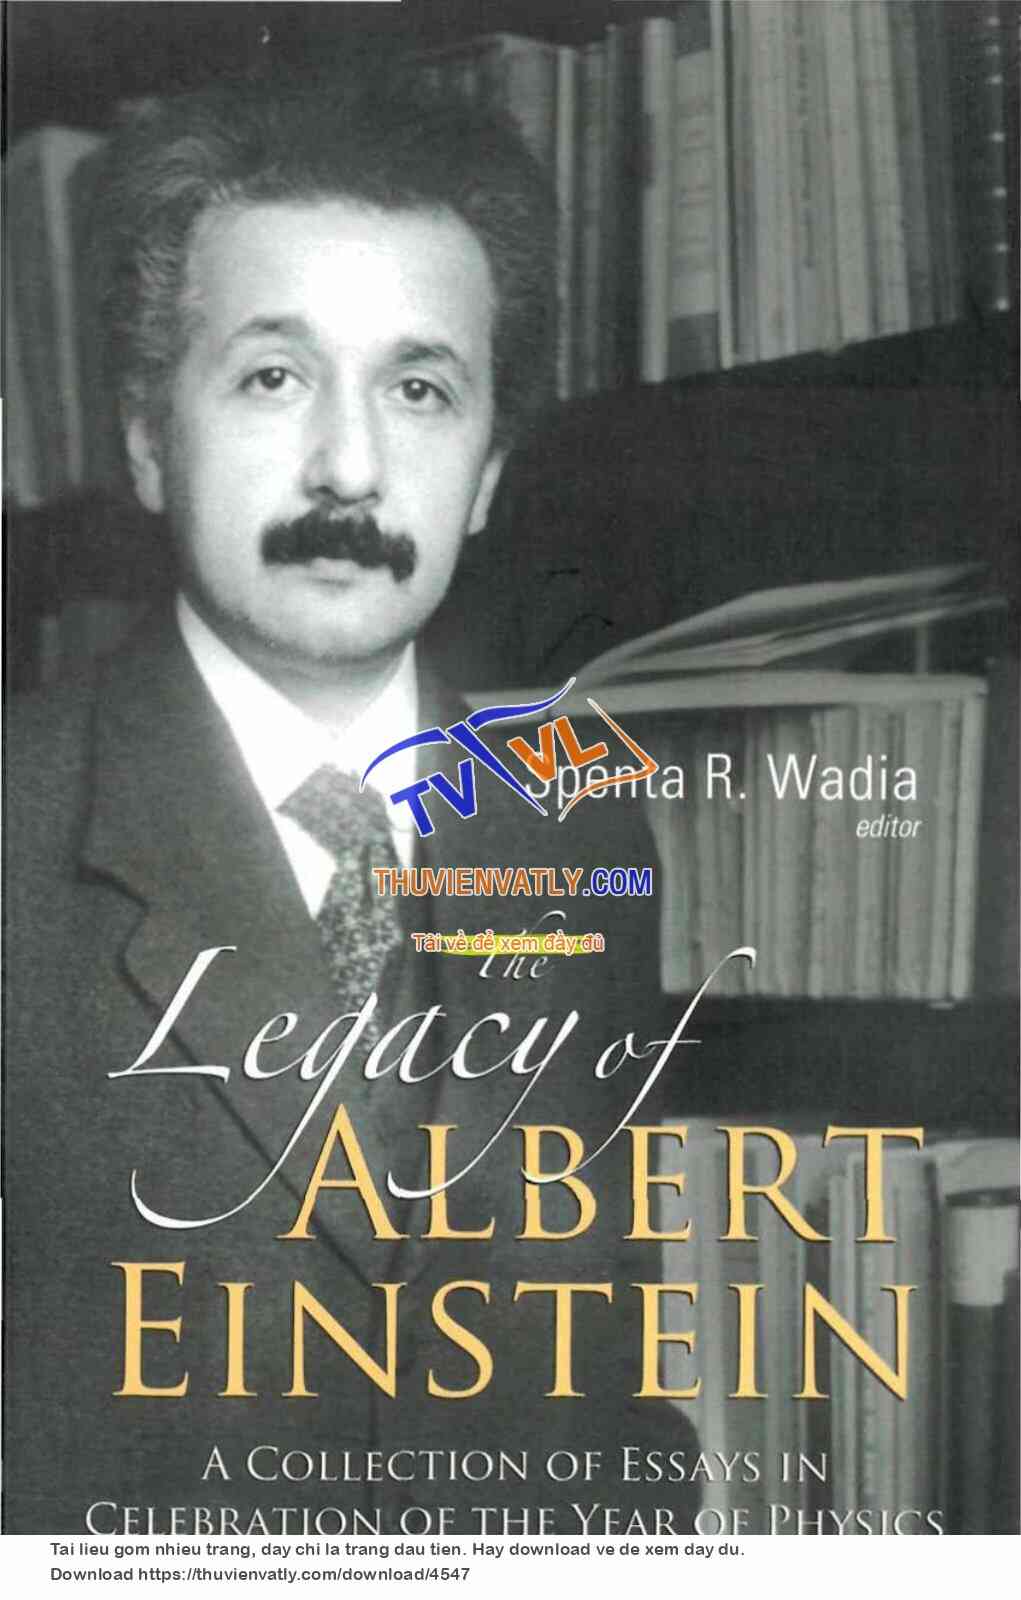 The Legacy of Albert Einstein